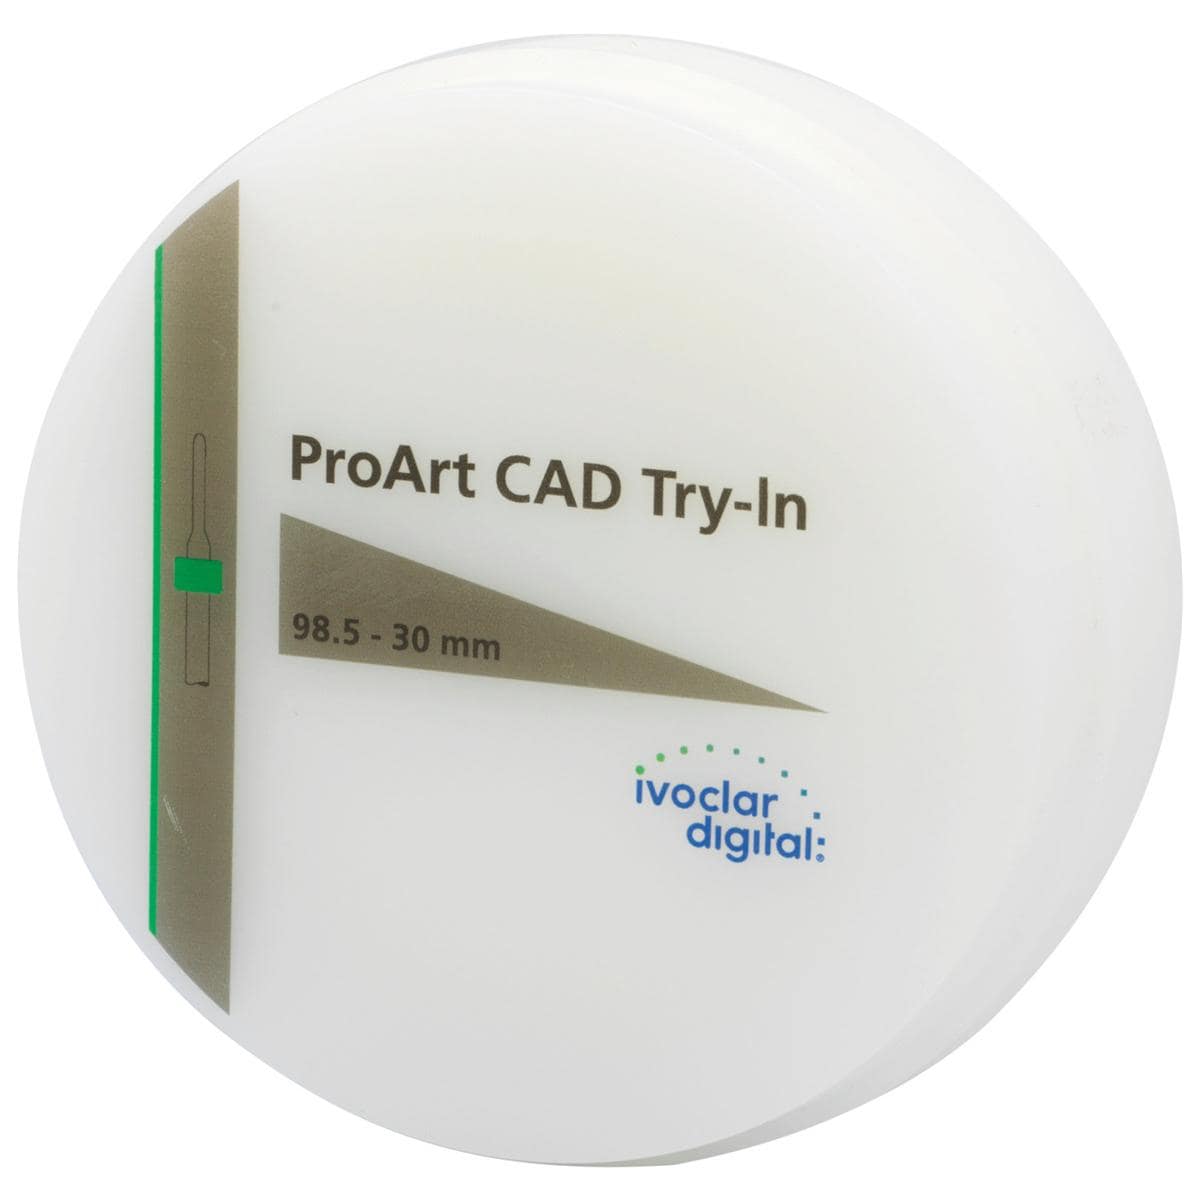 ProArt CAD Try-in - Ø 98,5 mm - Stärke 30 mm